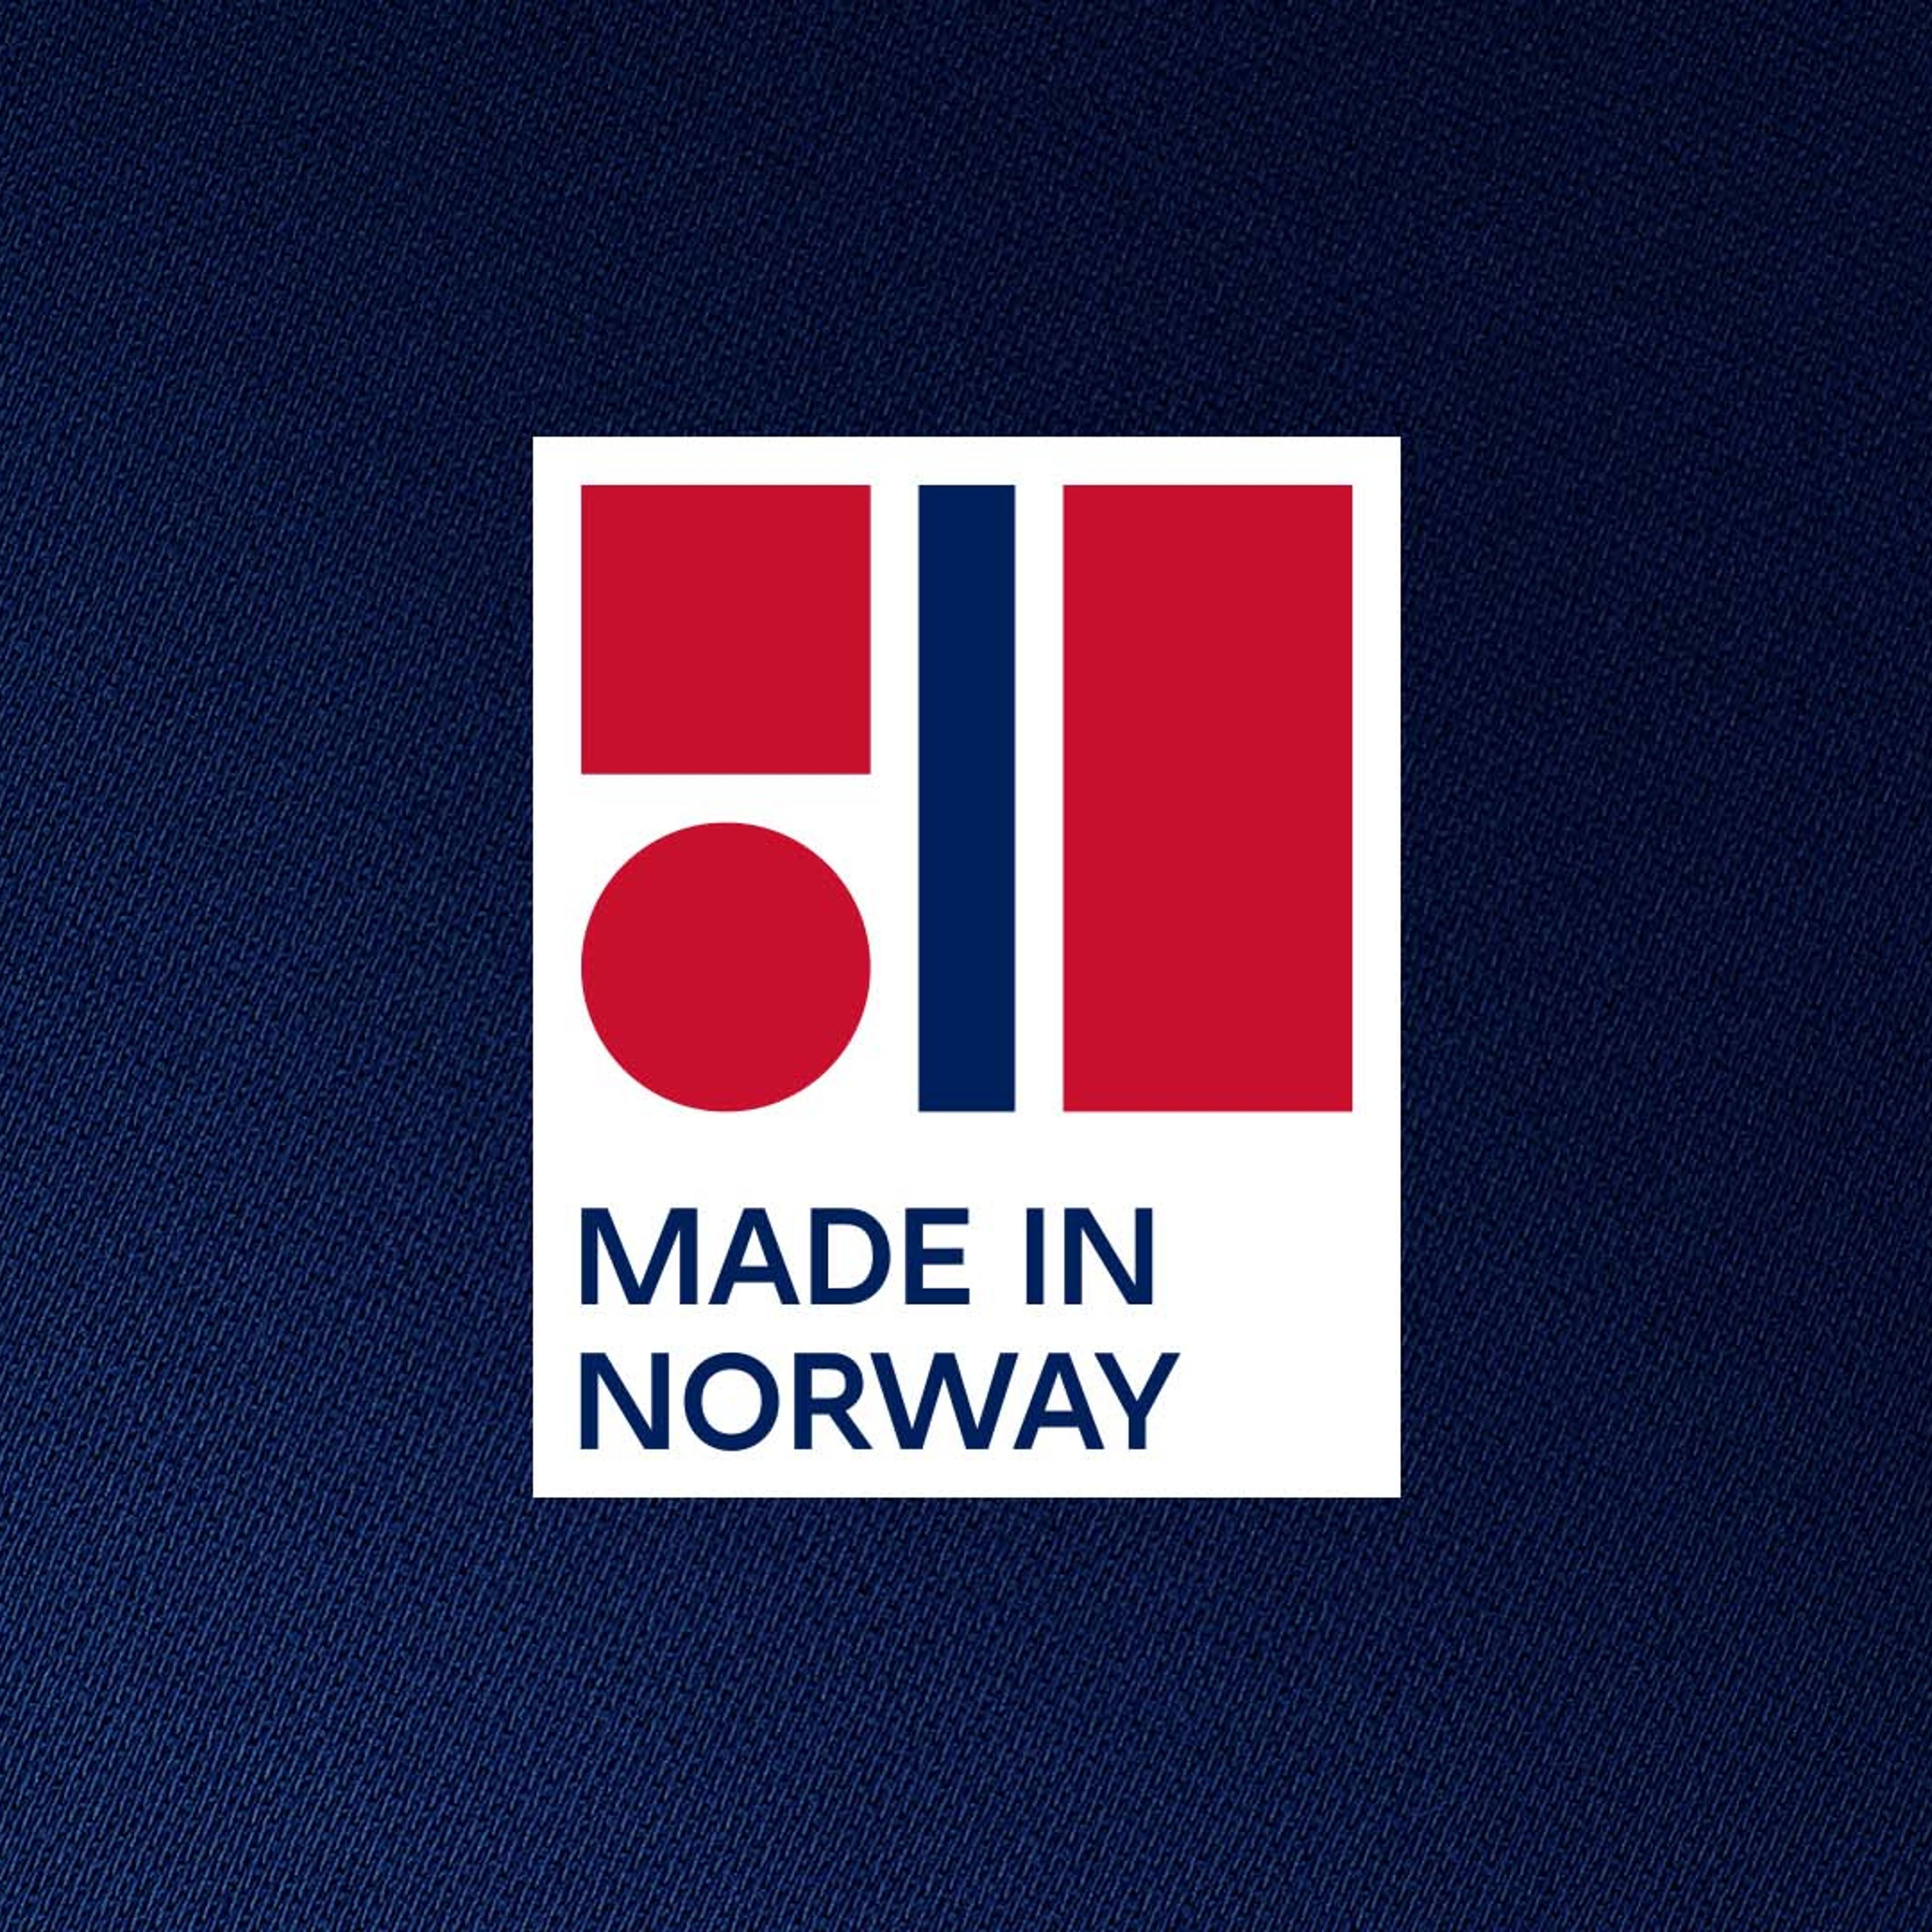 Opphavsmerket Made in Norway